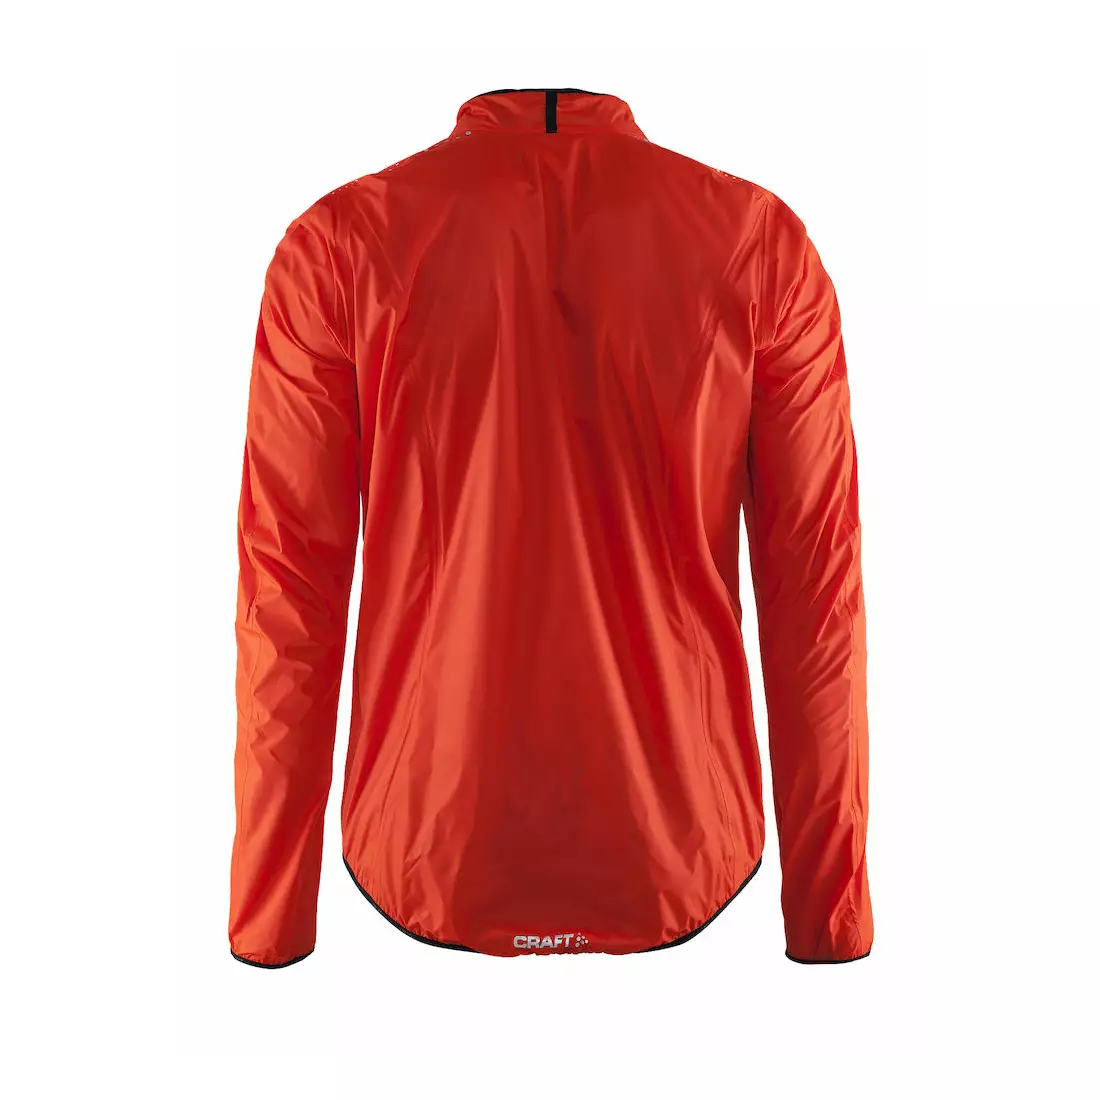 Pánska cyklistická bunda CRAFT MOVE odolná proti dažďu 1902578-2569, farba: oranžová